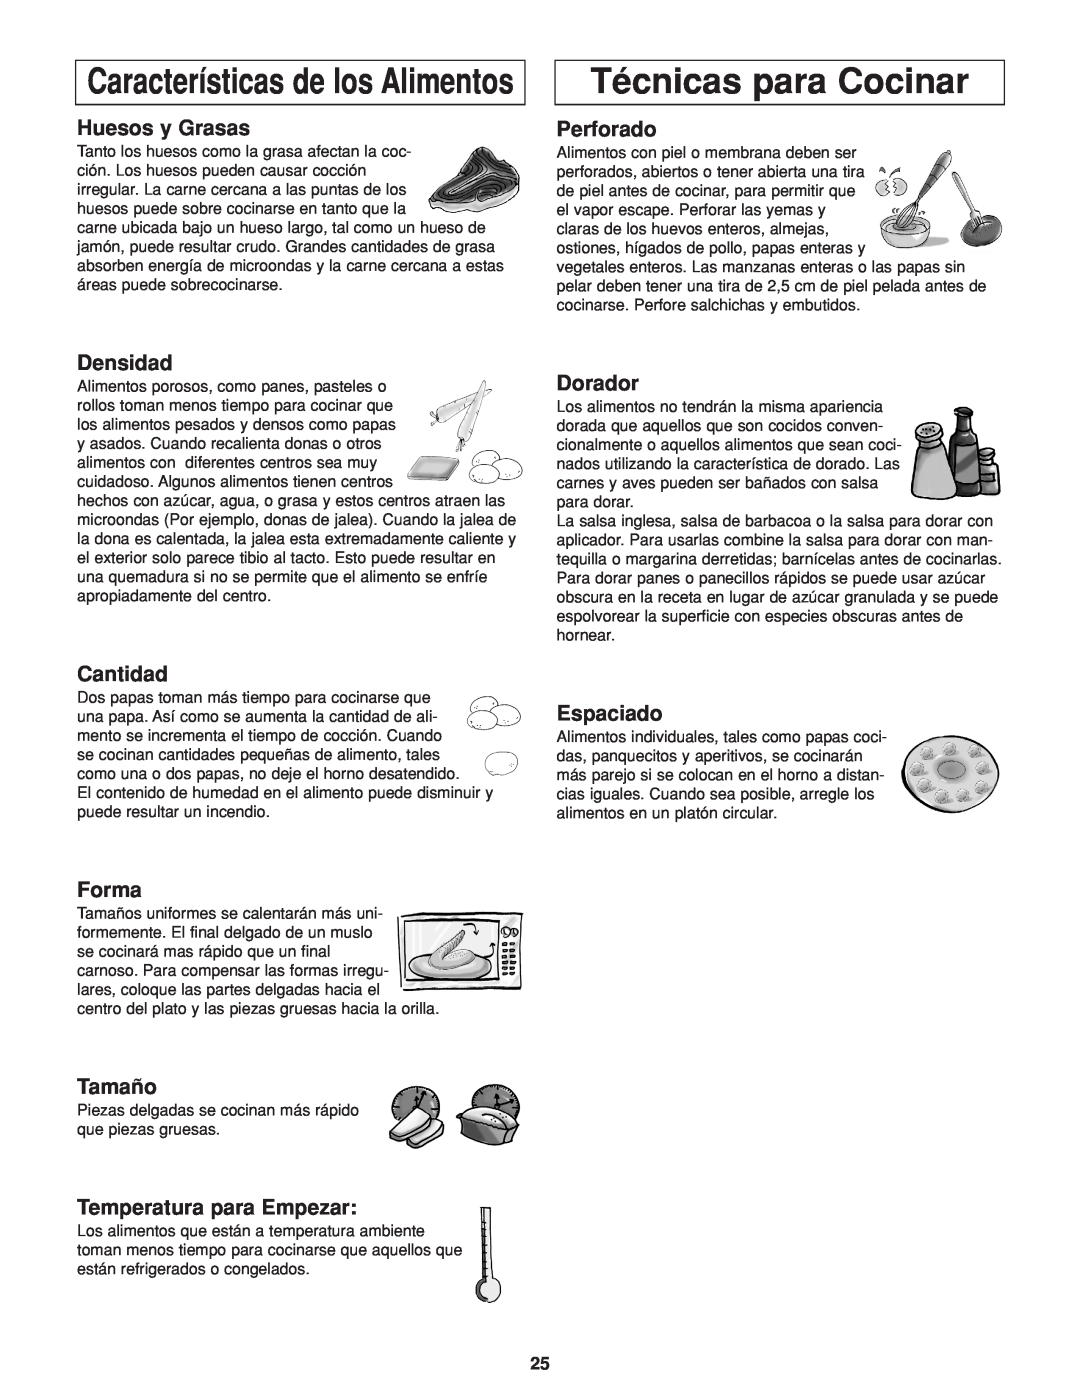 Panasonic NN-H264 Técnicas para Cocinar, Características de los Alimentos, Huesos y Grasas, Perforado, Densidad, Cantidad 